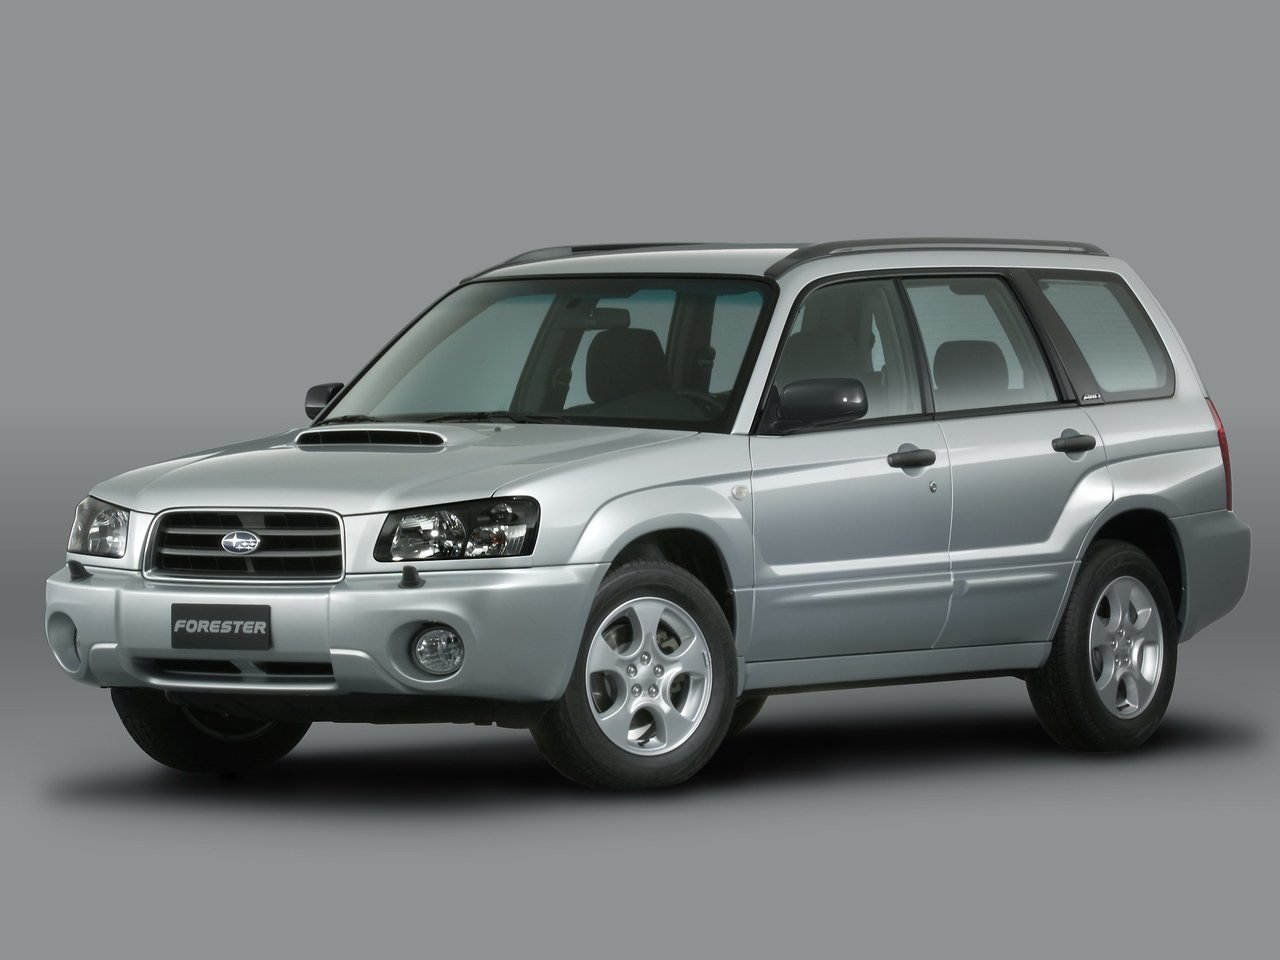 Расход газа четырёх комплектаций универсала пять дверей Subaru Forester. Разница стоимости заправки газом и бензином. Автономный пробег до и после установки ГБО.